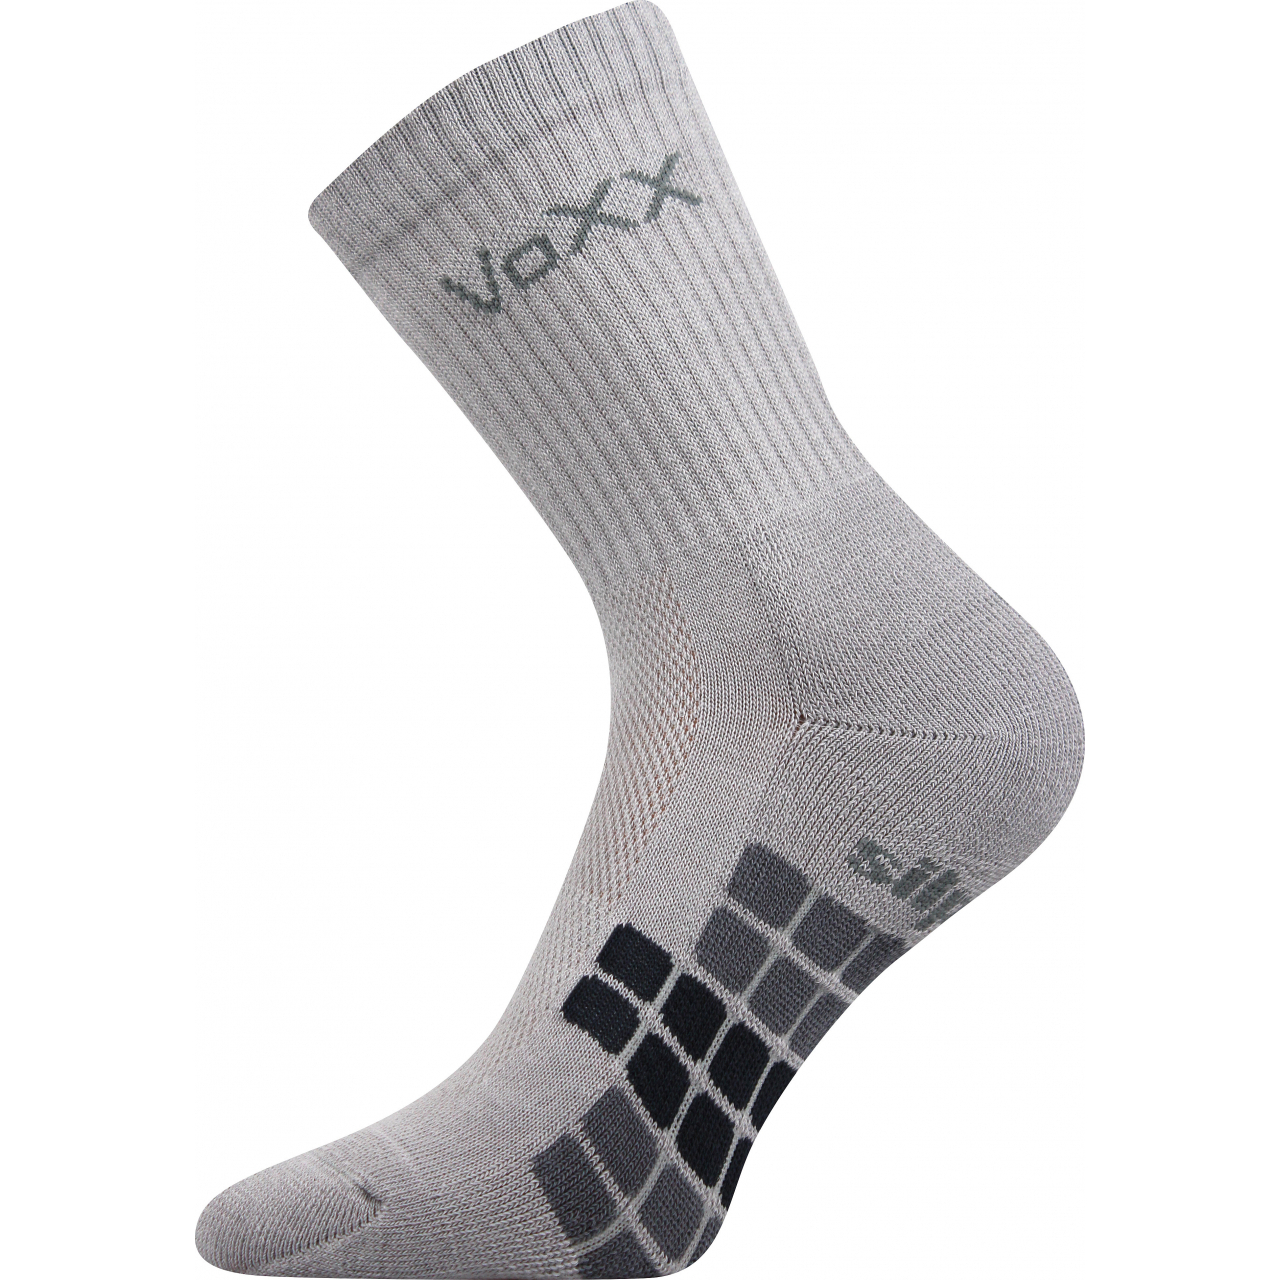 Ponožky unisex sportovní Voxx Raptor - světle šedé, 39-42